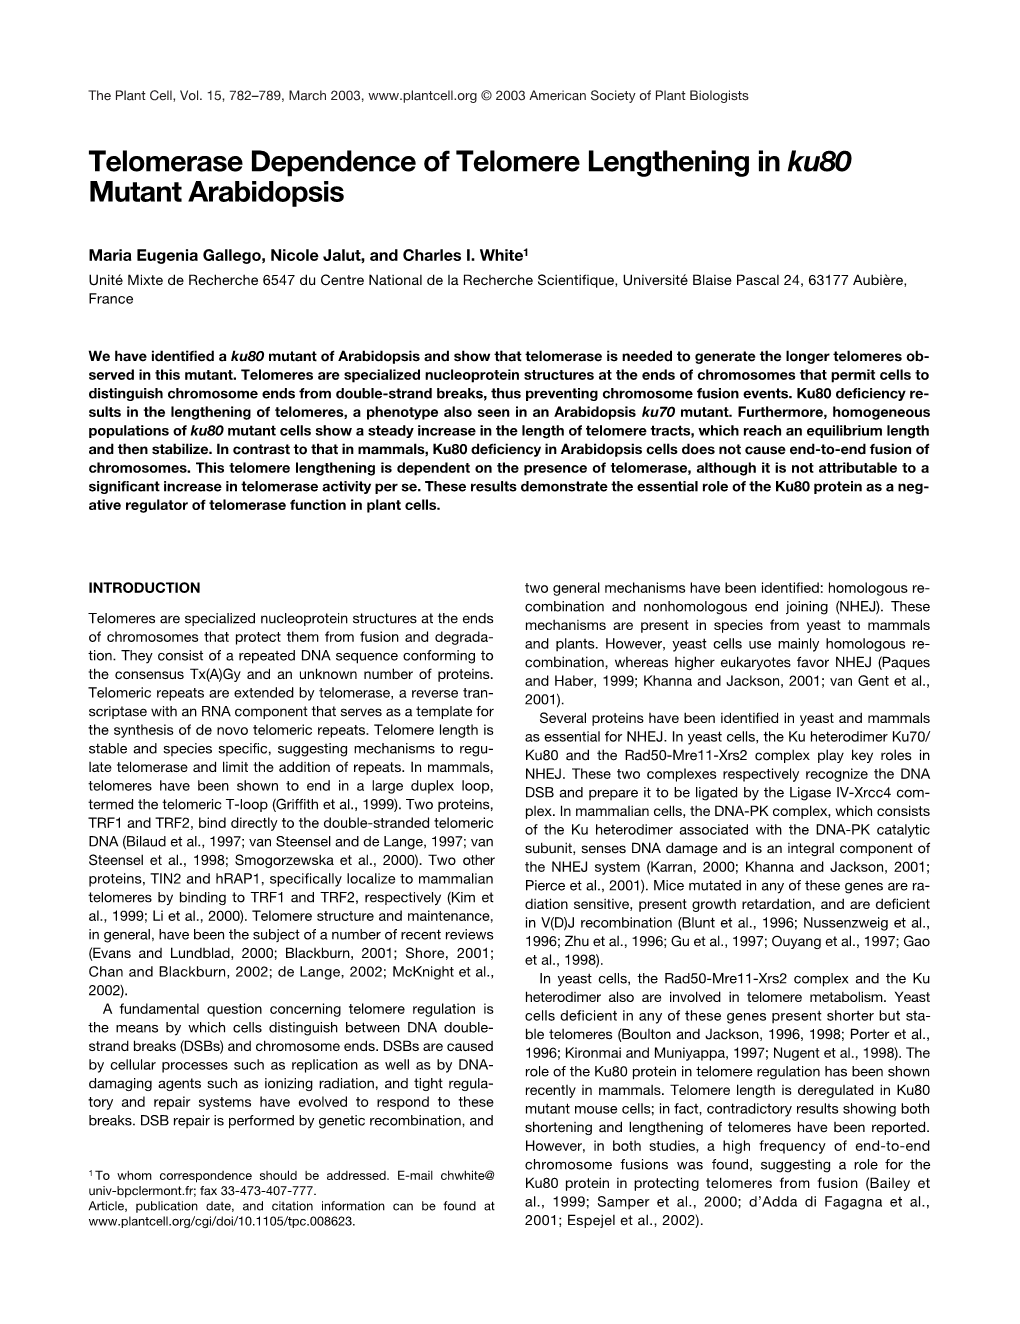 Telomerase Dependence of Telomere Lengthening in Ku80 Mutant Arabidopsis